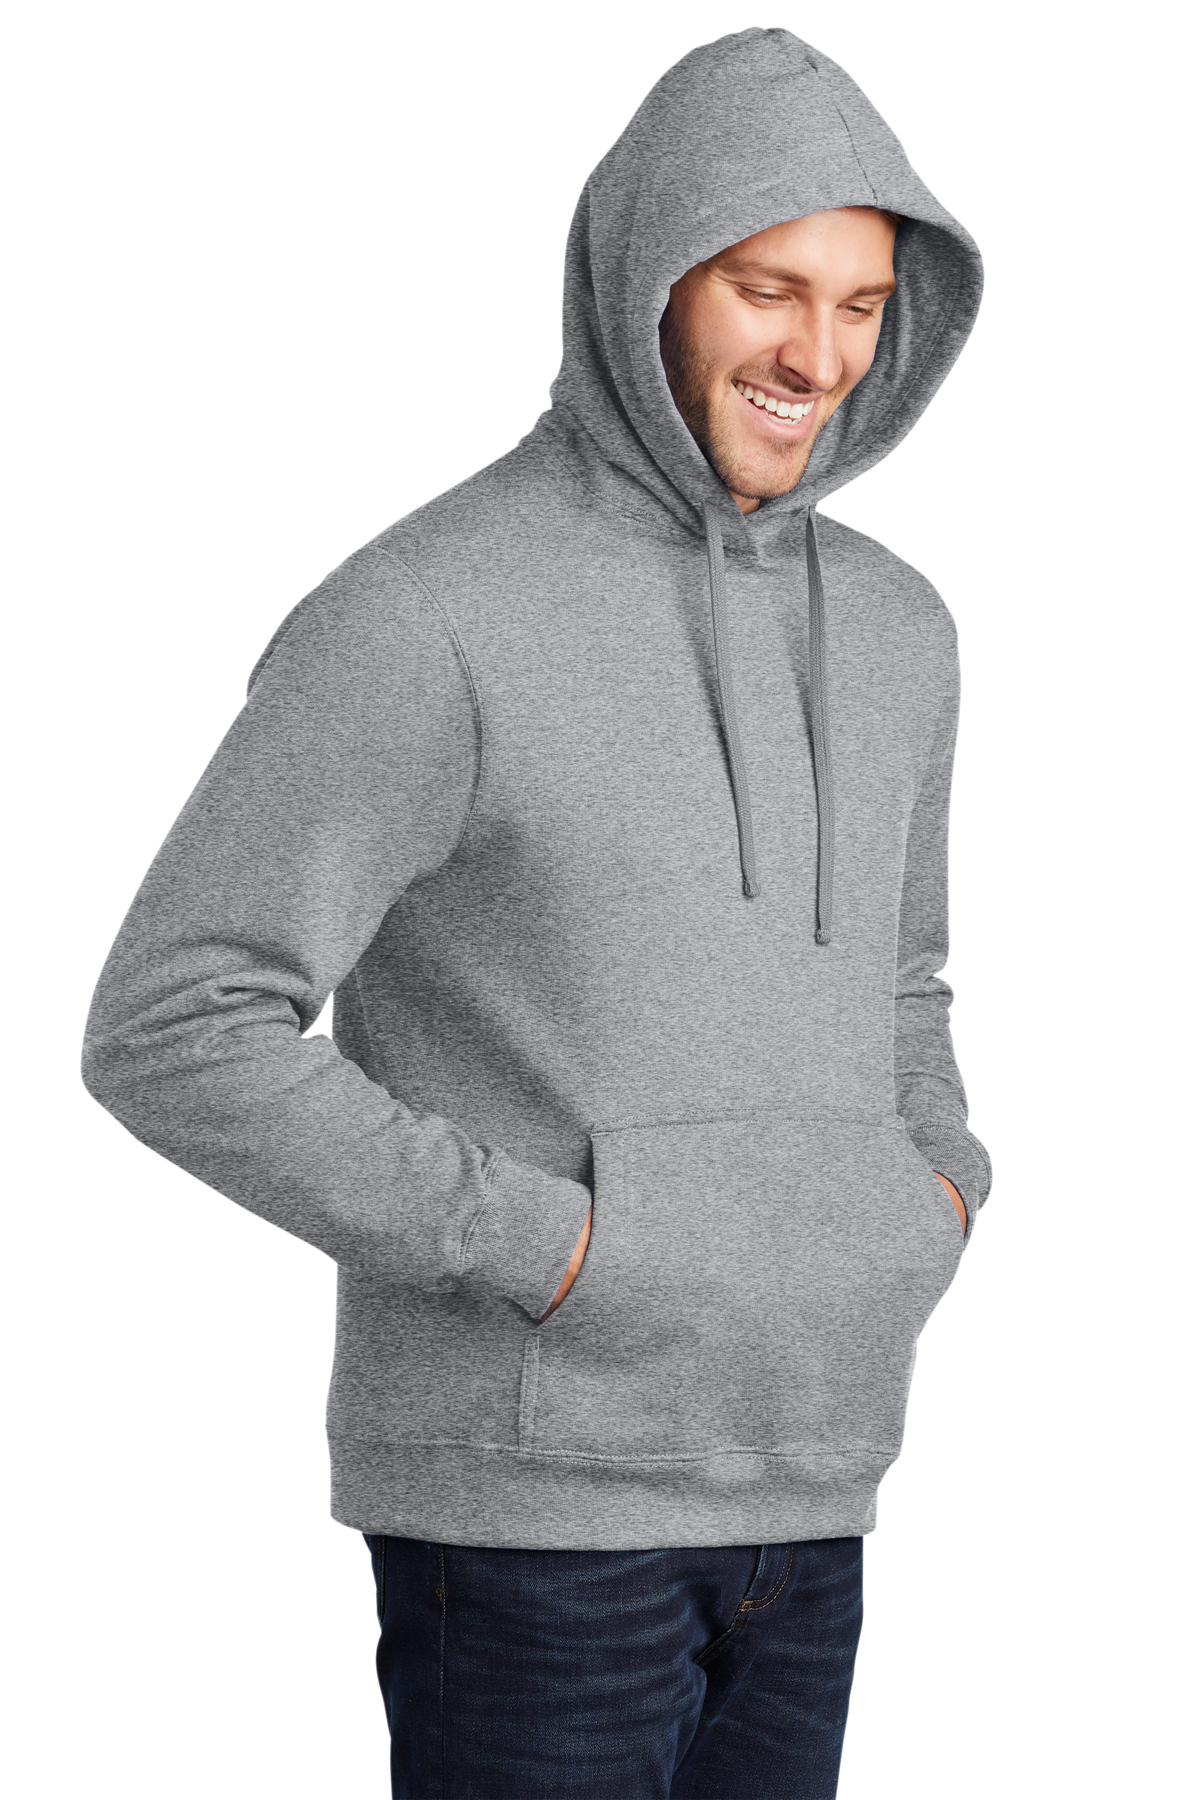 Port & Company ® Fan Favorite™ Fleece Pullover Hooded Sweatshirt ...